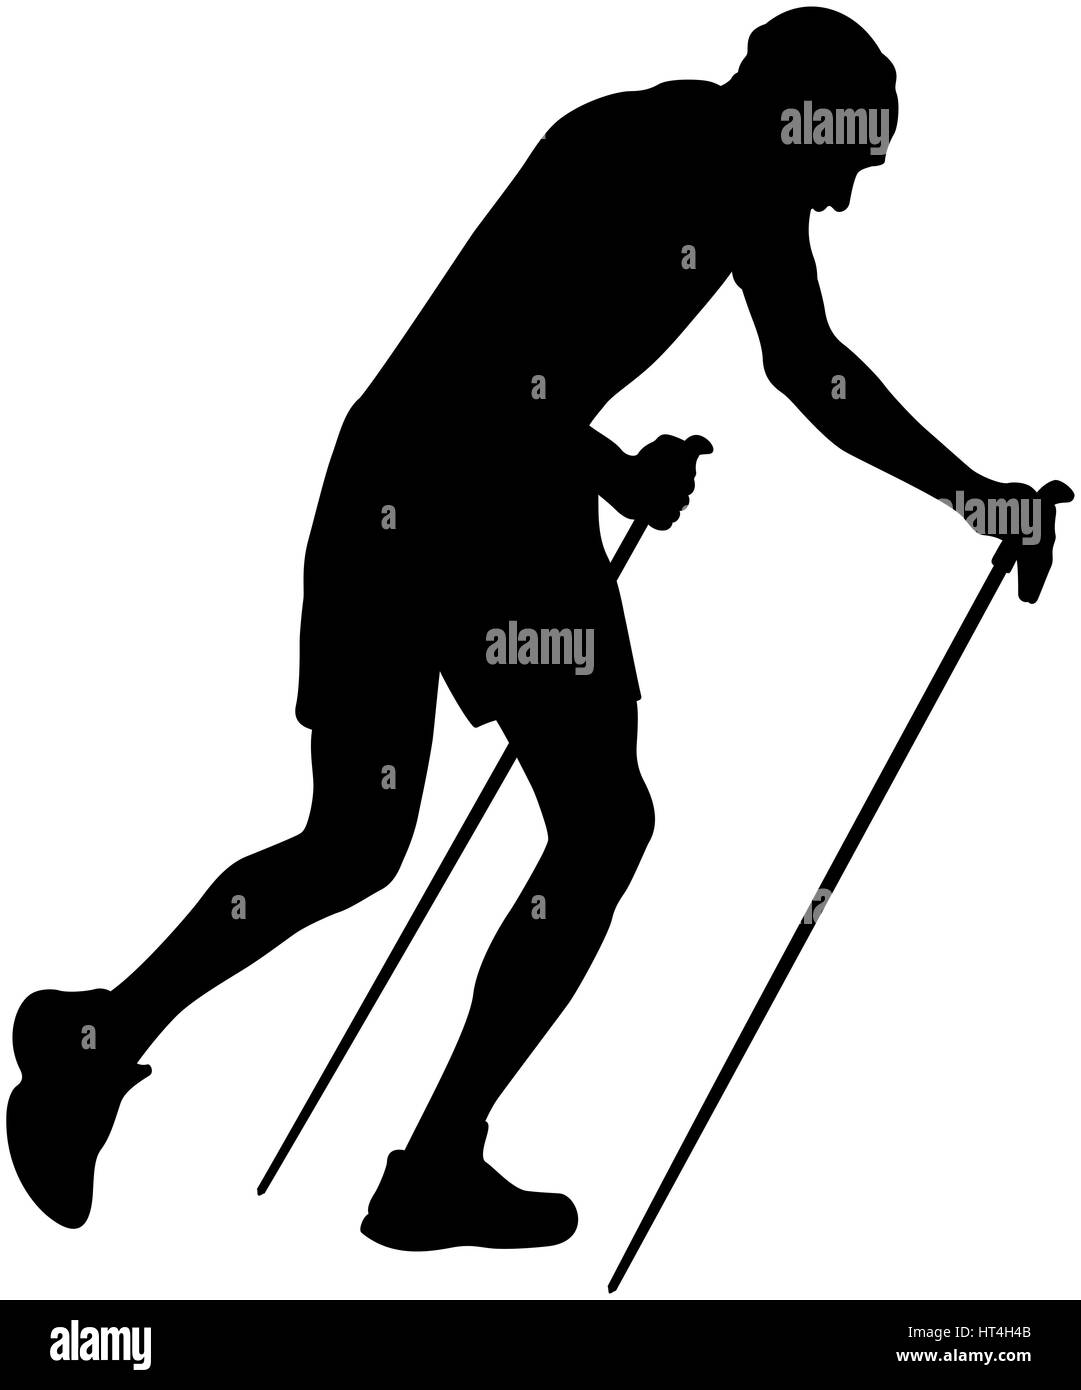 Homme coureur avec les bâtons de trekking running uphill silhouette noire Banque D'Images